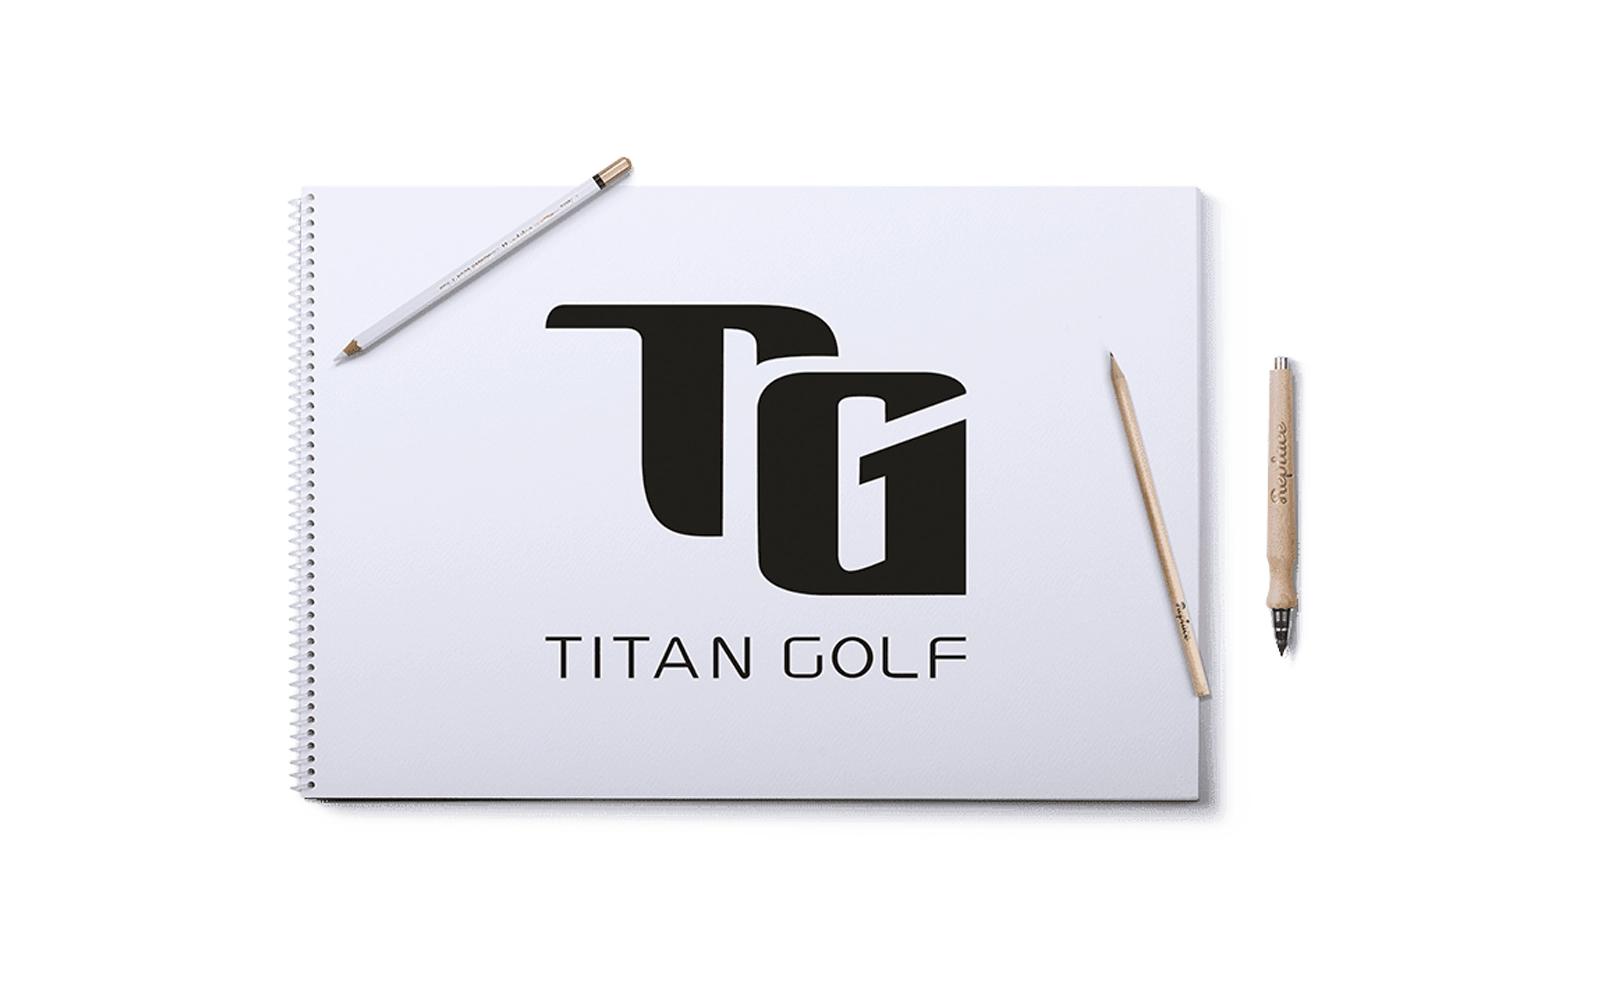 Logogestaltung Berlin Branding Corporate Design Golfausstatter